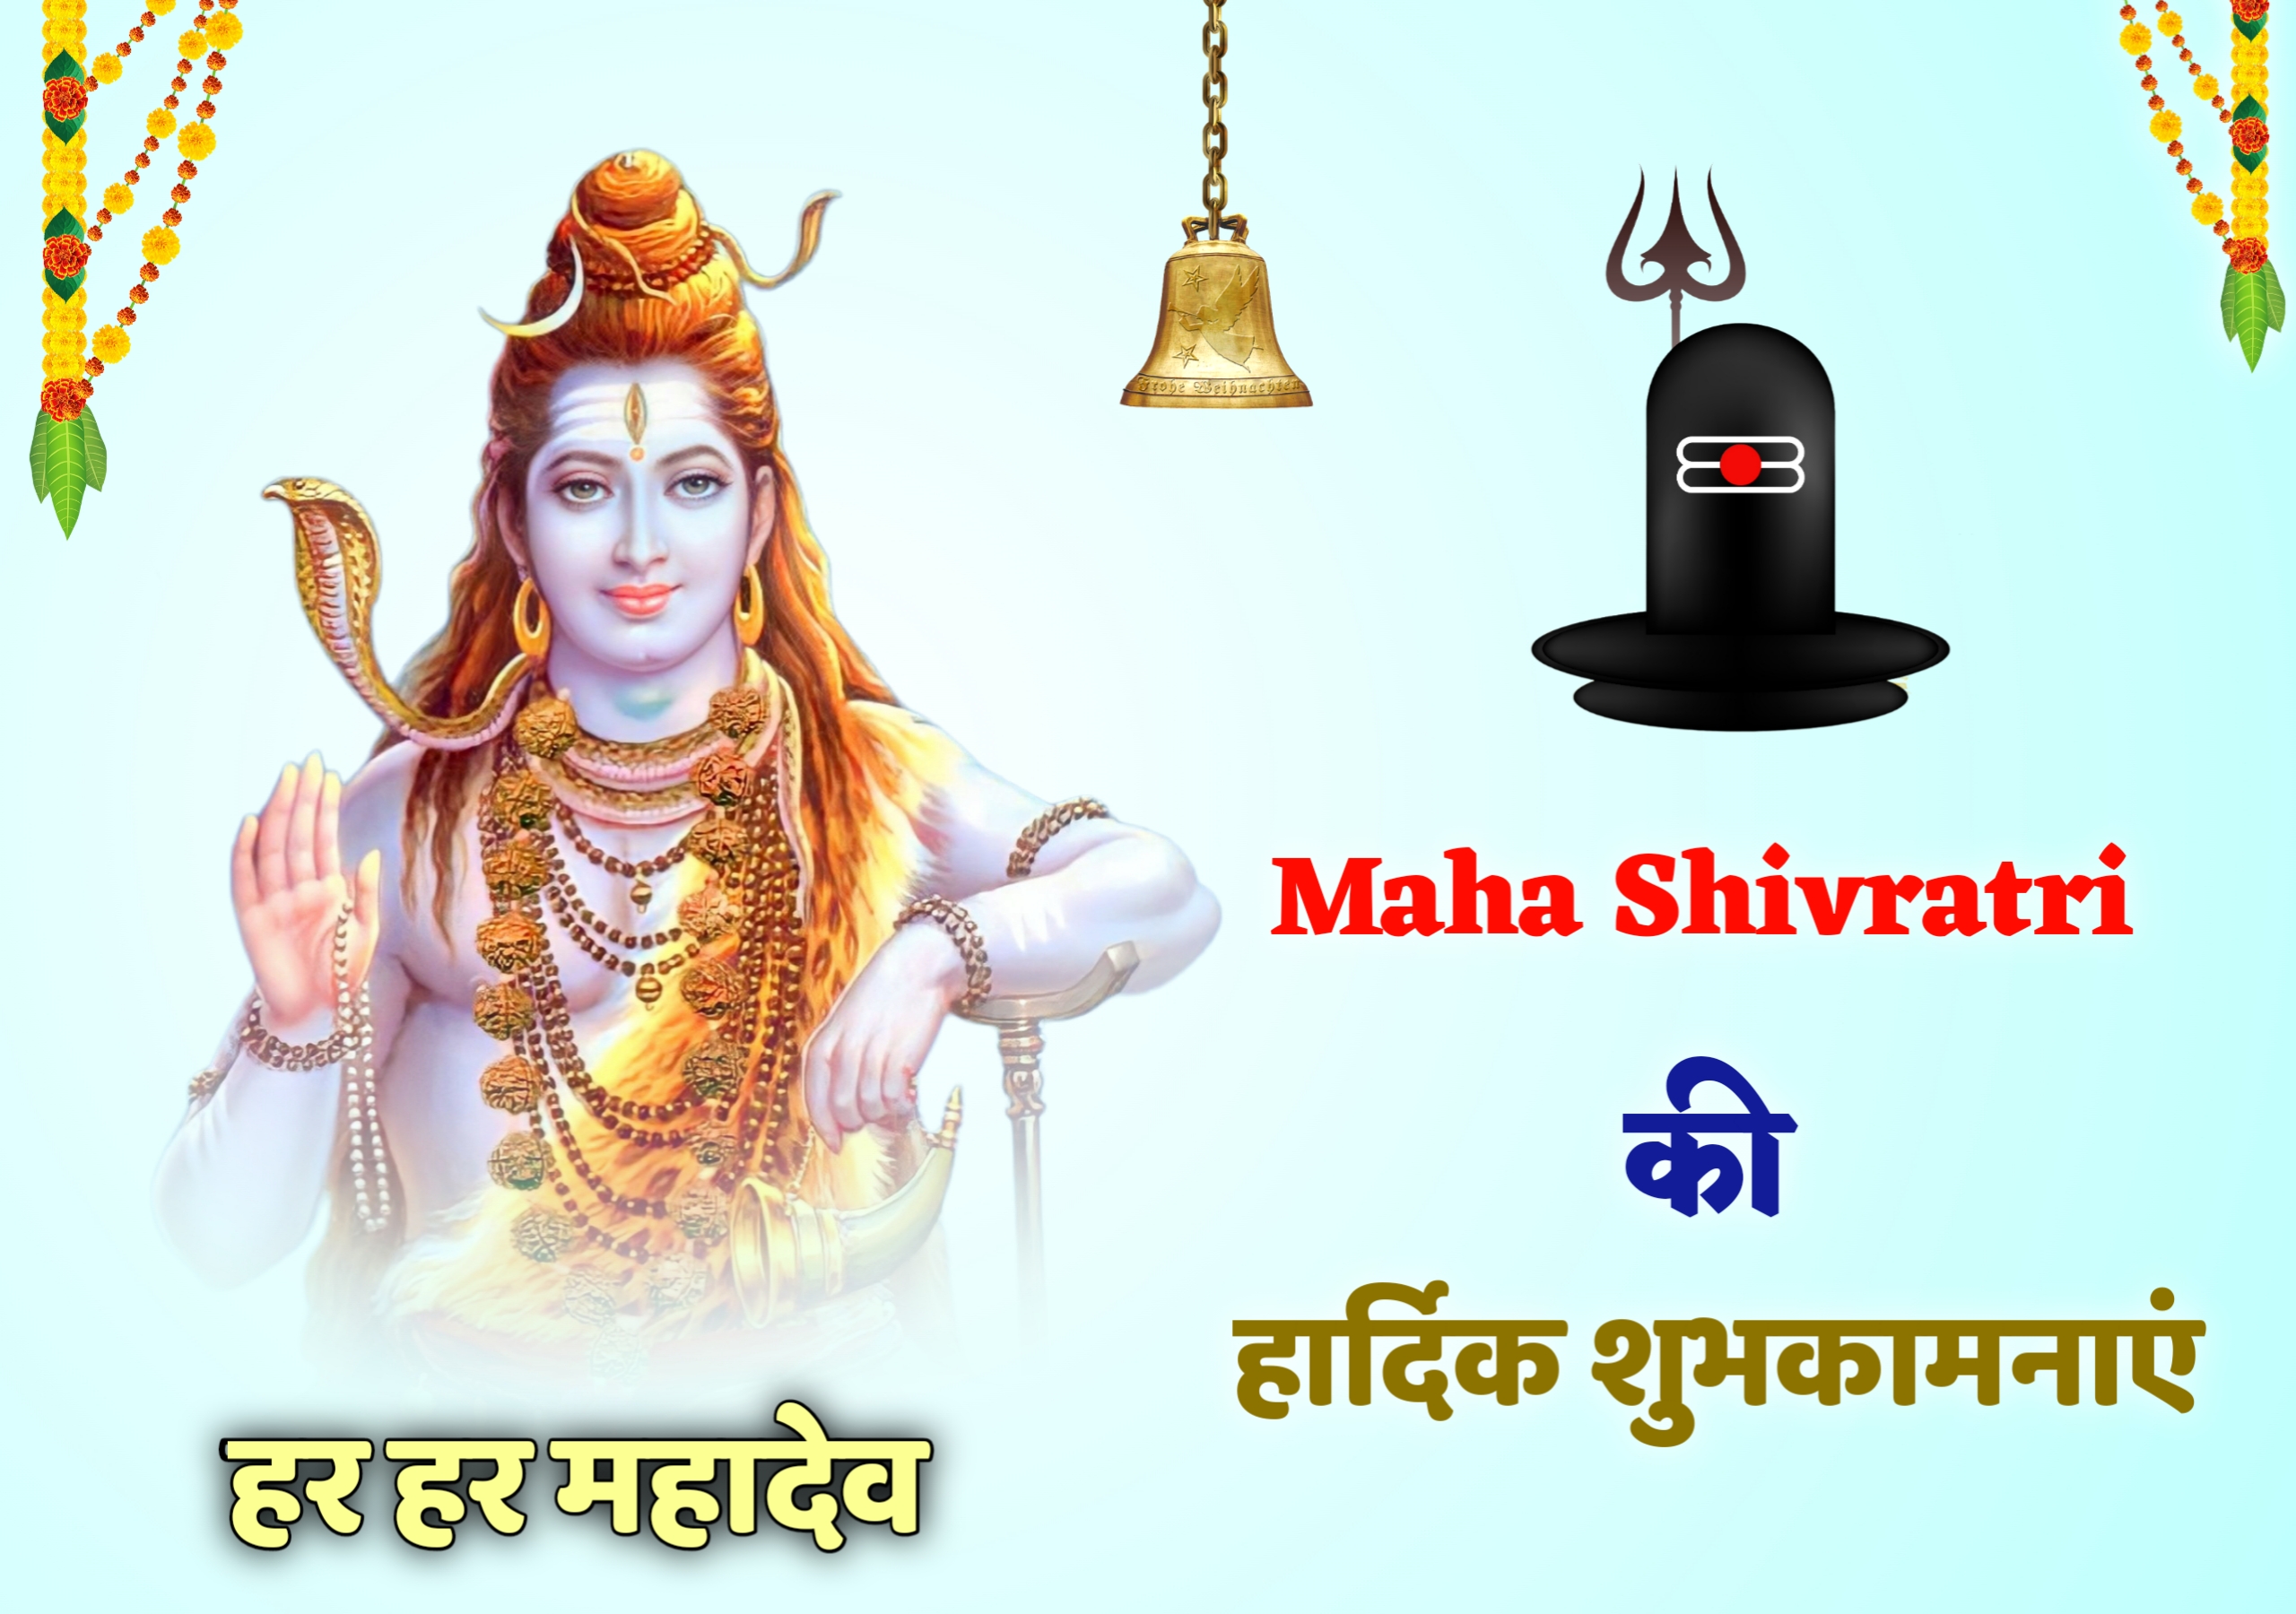 Maha Shivratri Lord Shivji Image